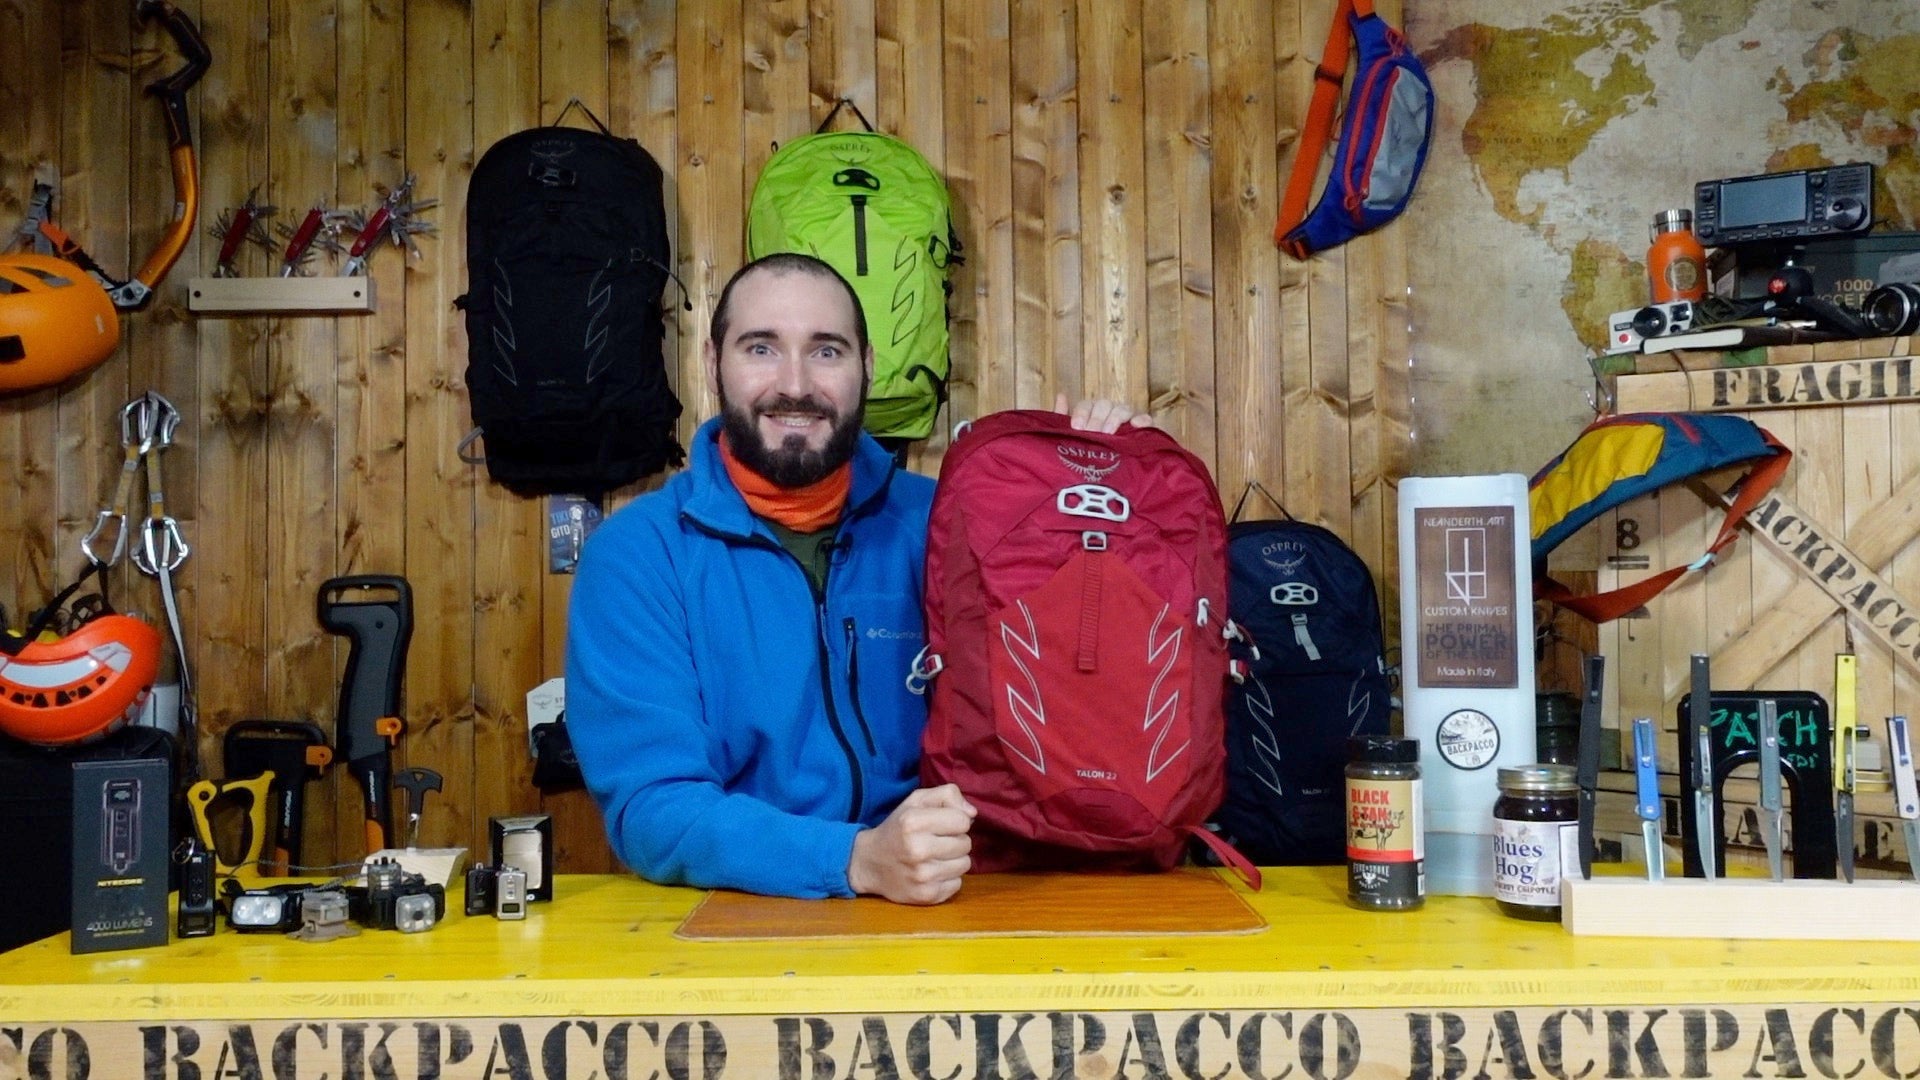 Paolo di backpacco spiega lo zaino talon 22 e la sacca idrica di osprey